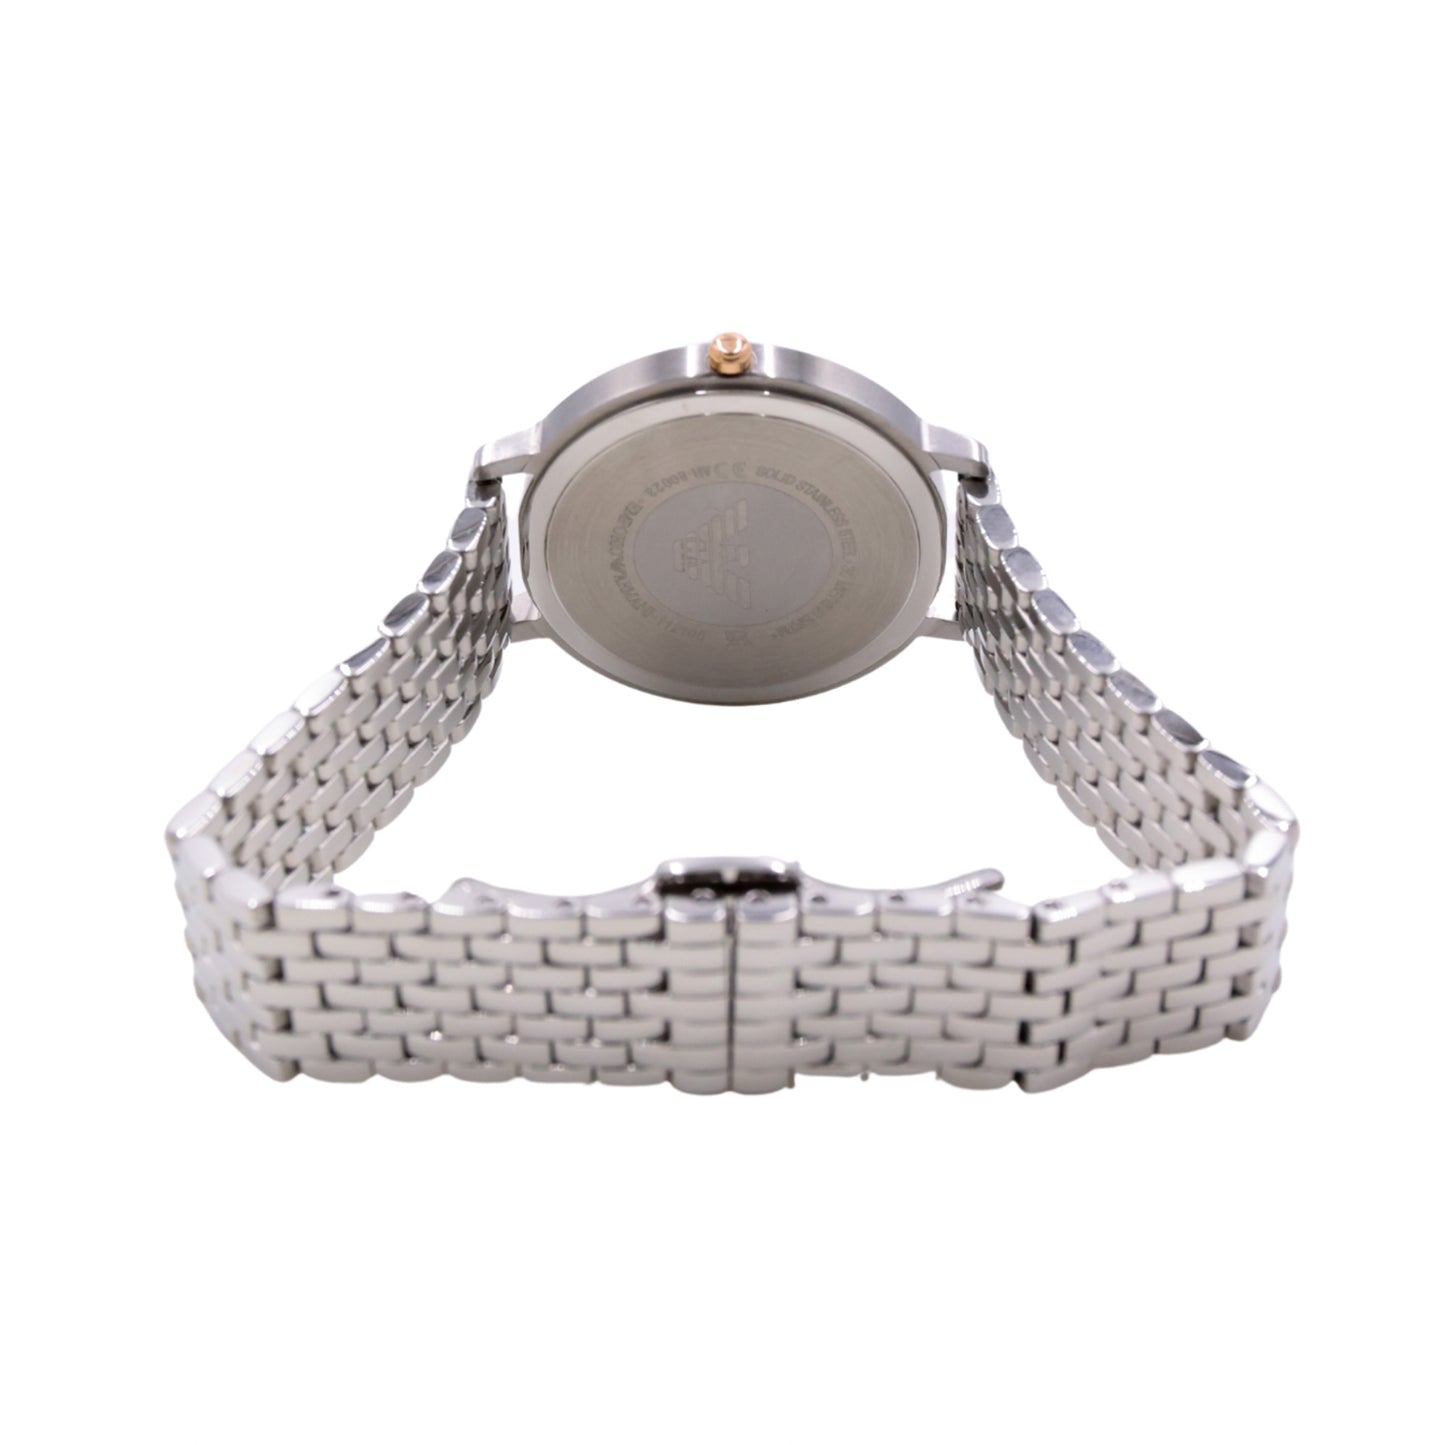 Emporio Armani Quartz Diamond White Dial Ladies Watch - AR80023 - 723763278027